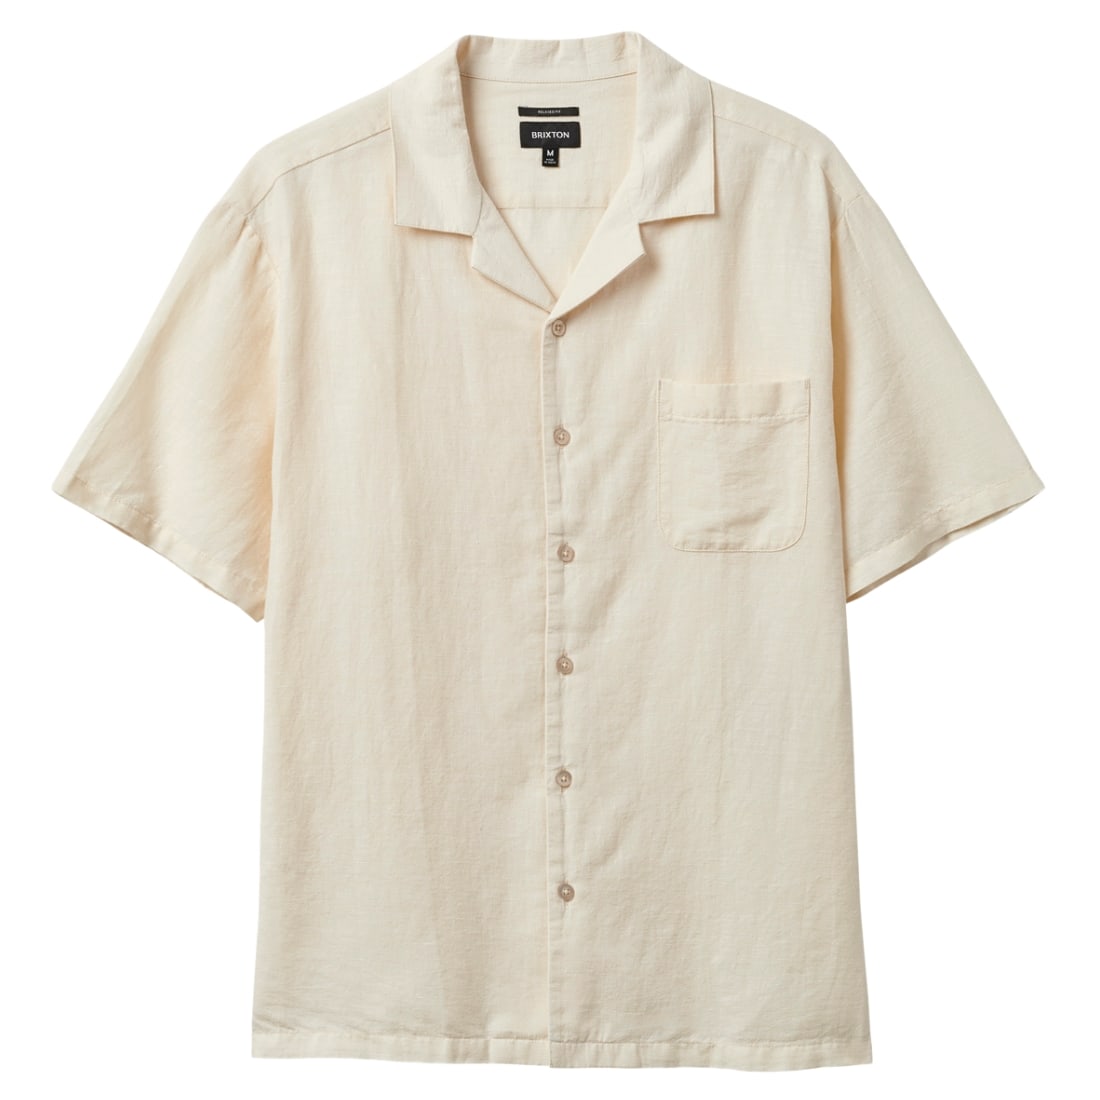 Brixton Bunker Linen Blend Short Sleeve Shirt - Whitecap